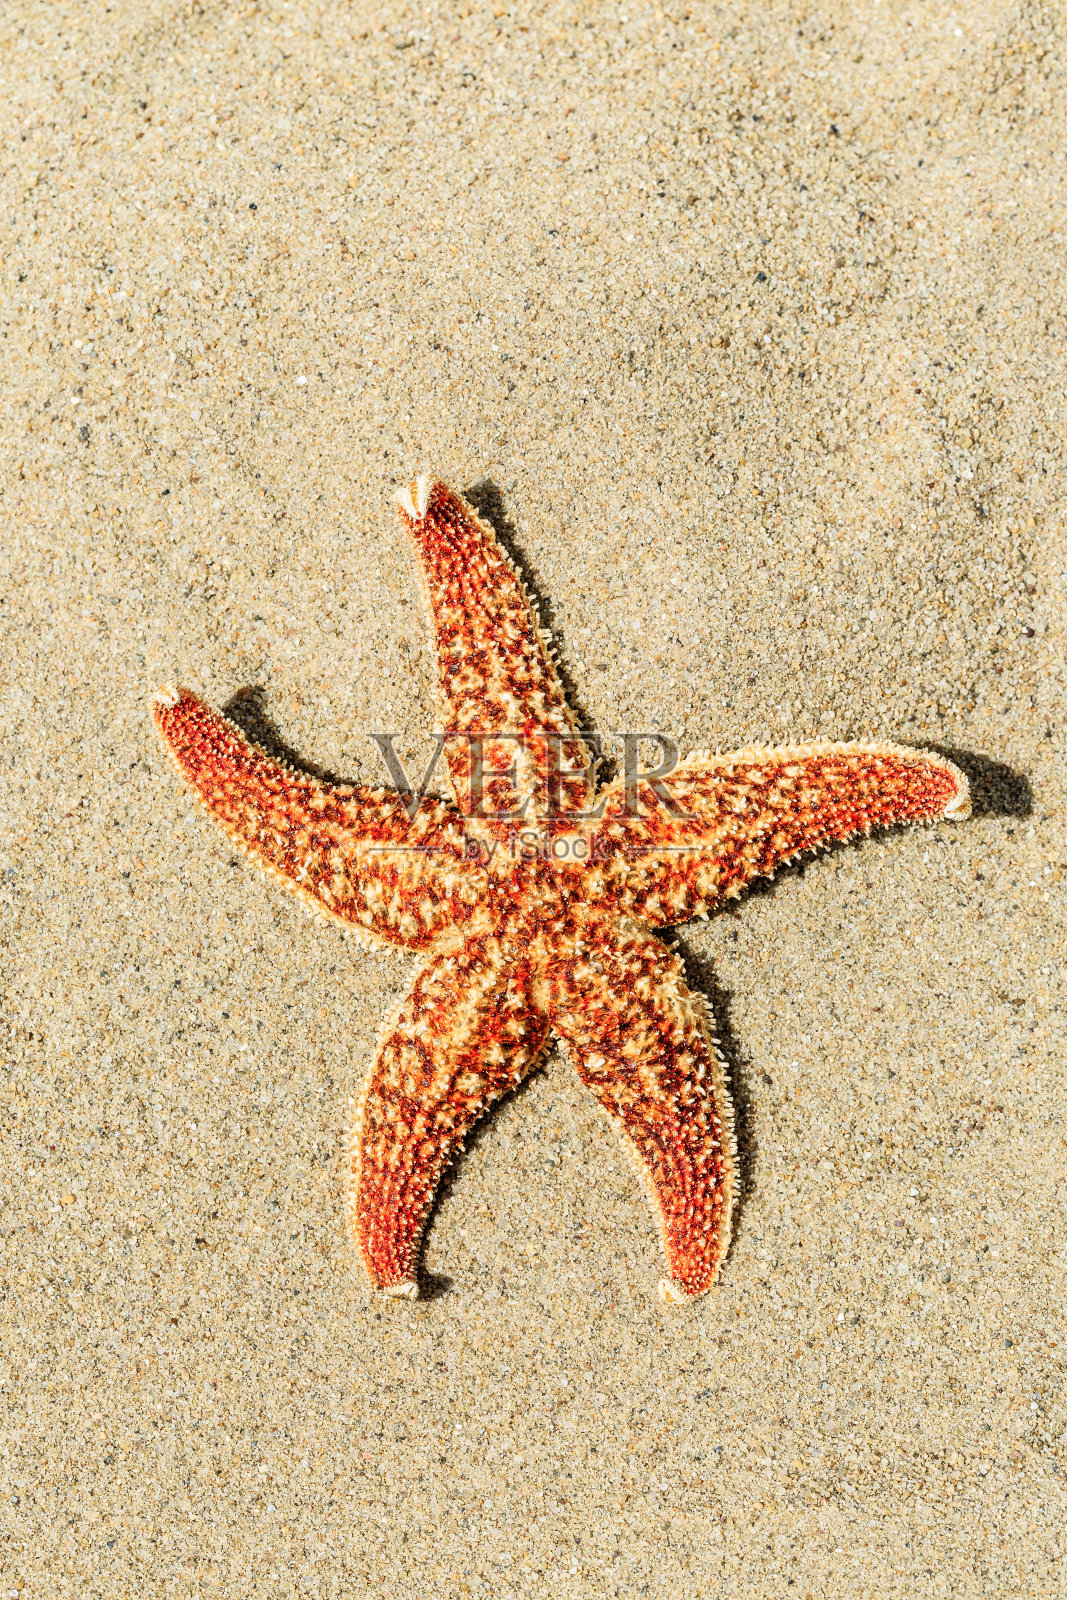 热带海滩上的海星图片下载 - 觅知网